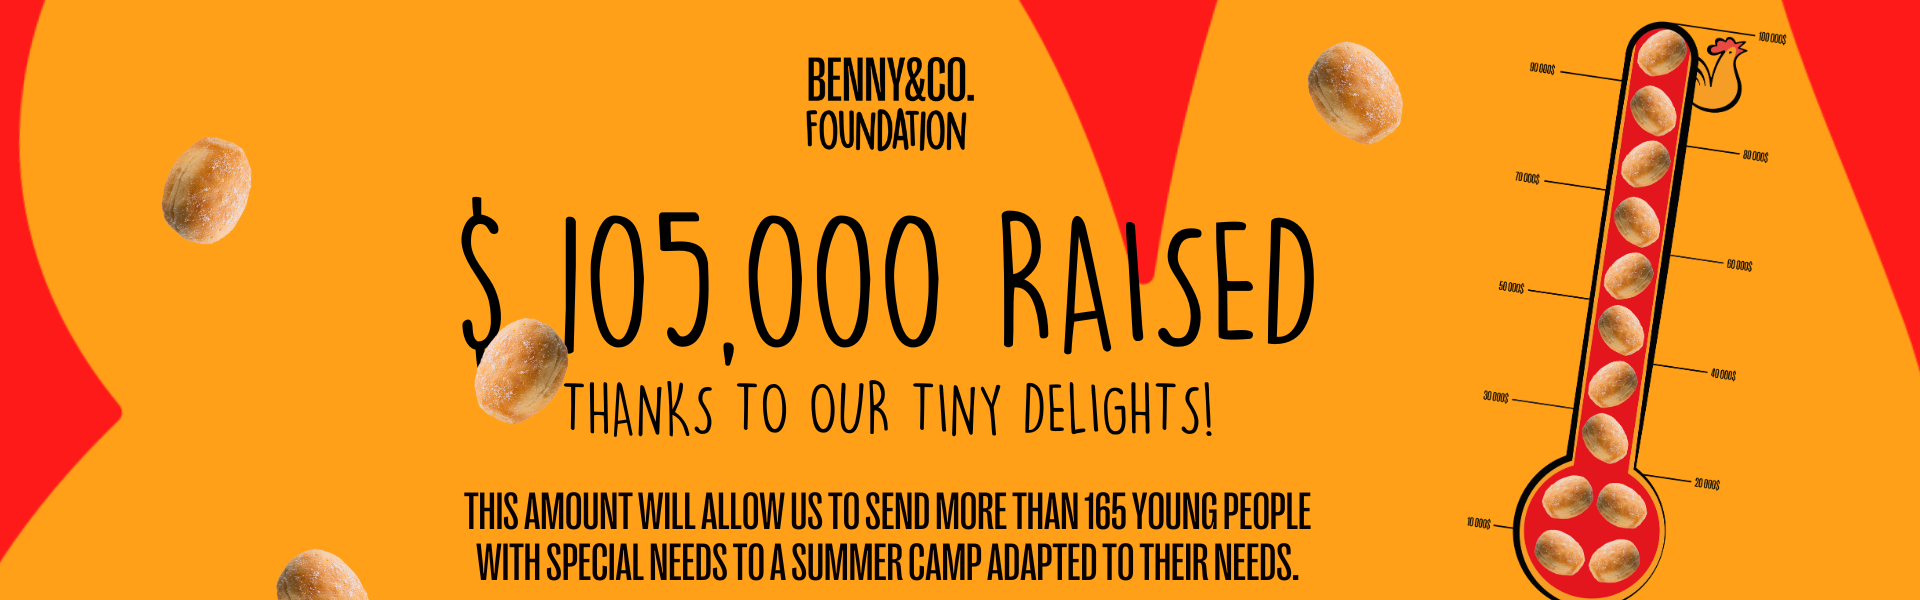 Benny&Co. Foundation - Benny & Co.